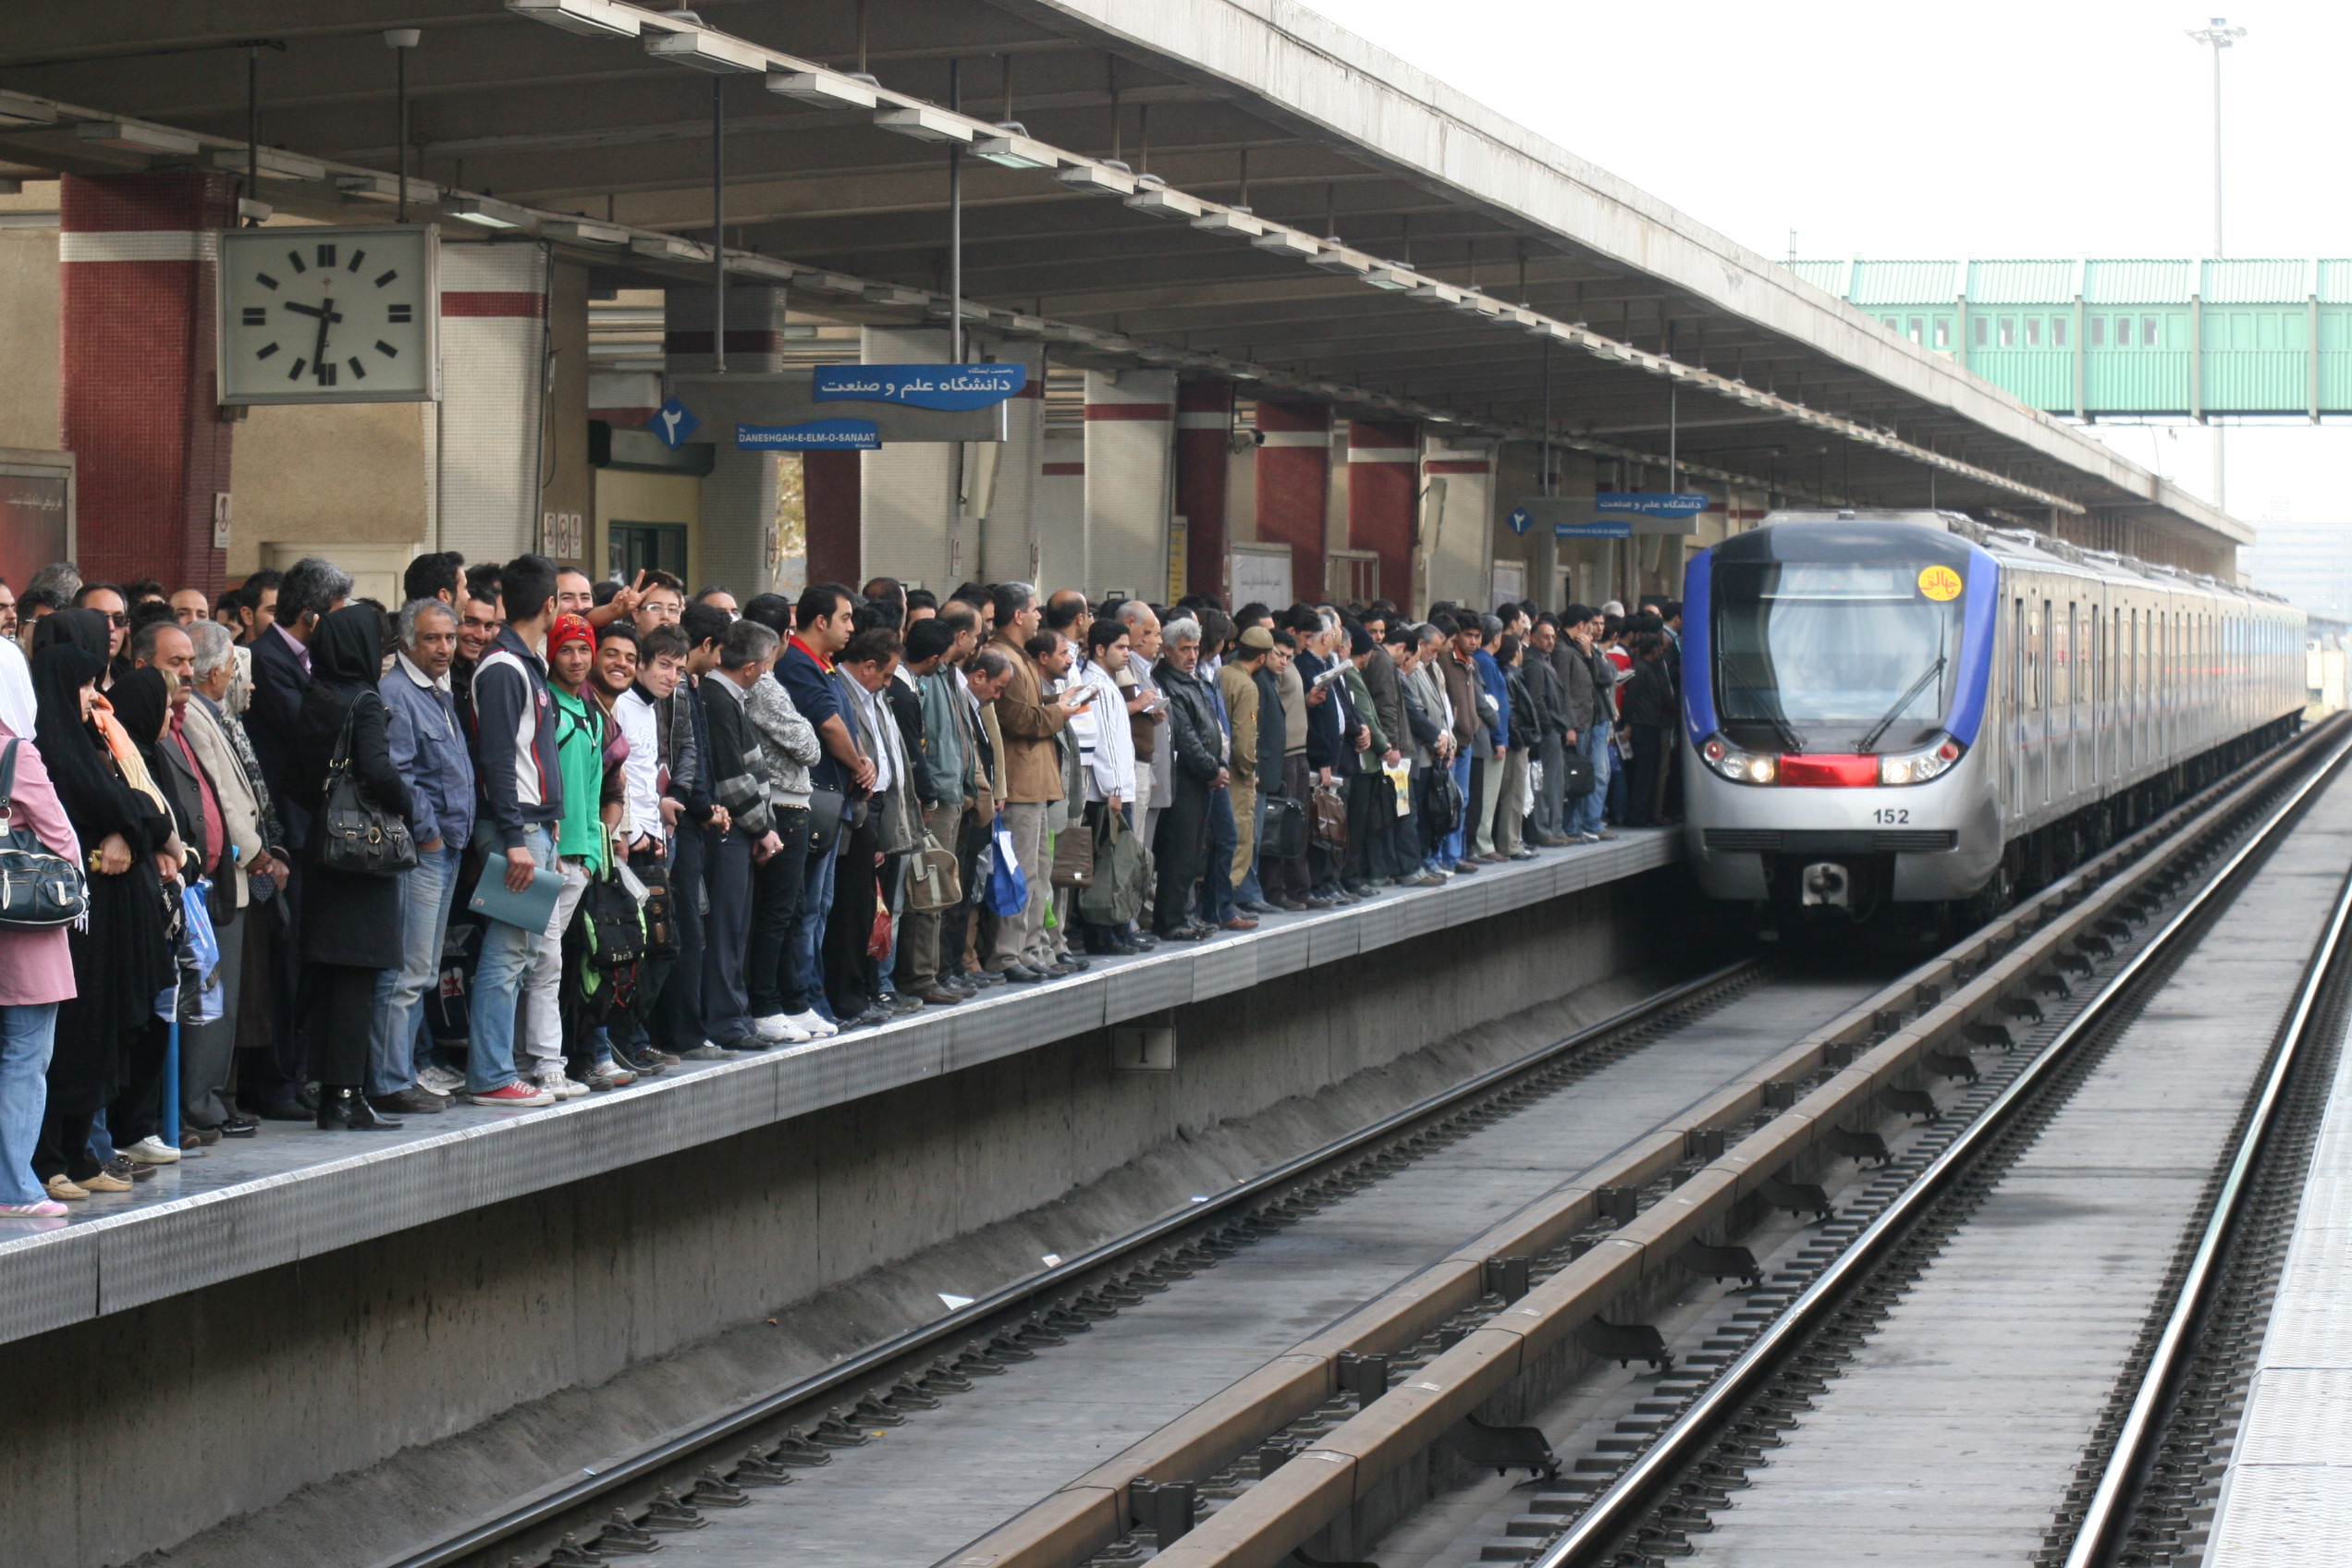 مدیرعامل مترو: حداکثر انتظار برای قطار 15 دقیقه/ تندگویان: مردم 50 دقیقه منتظر قطار می مانند